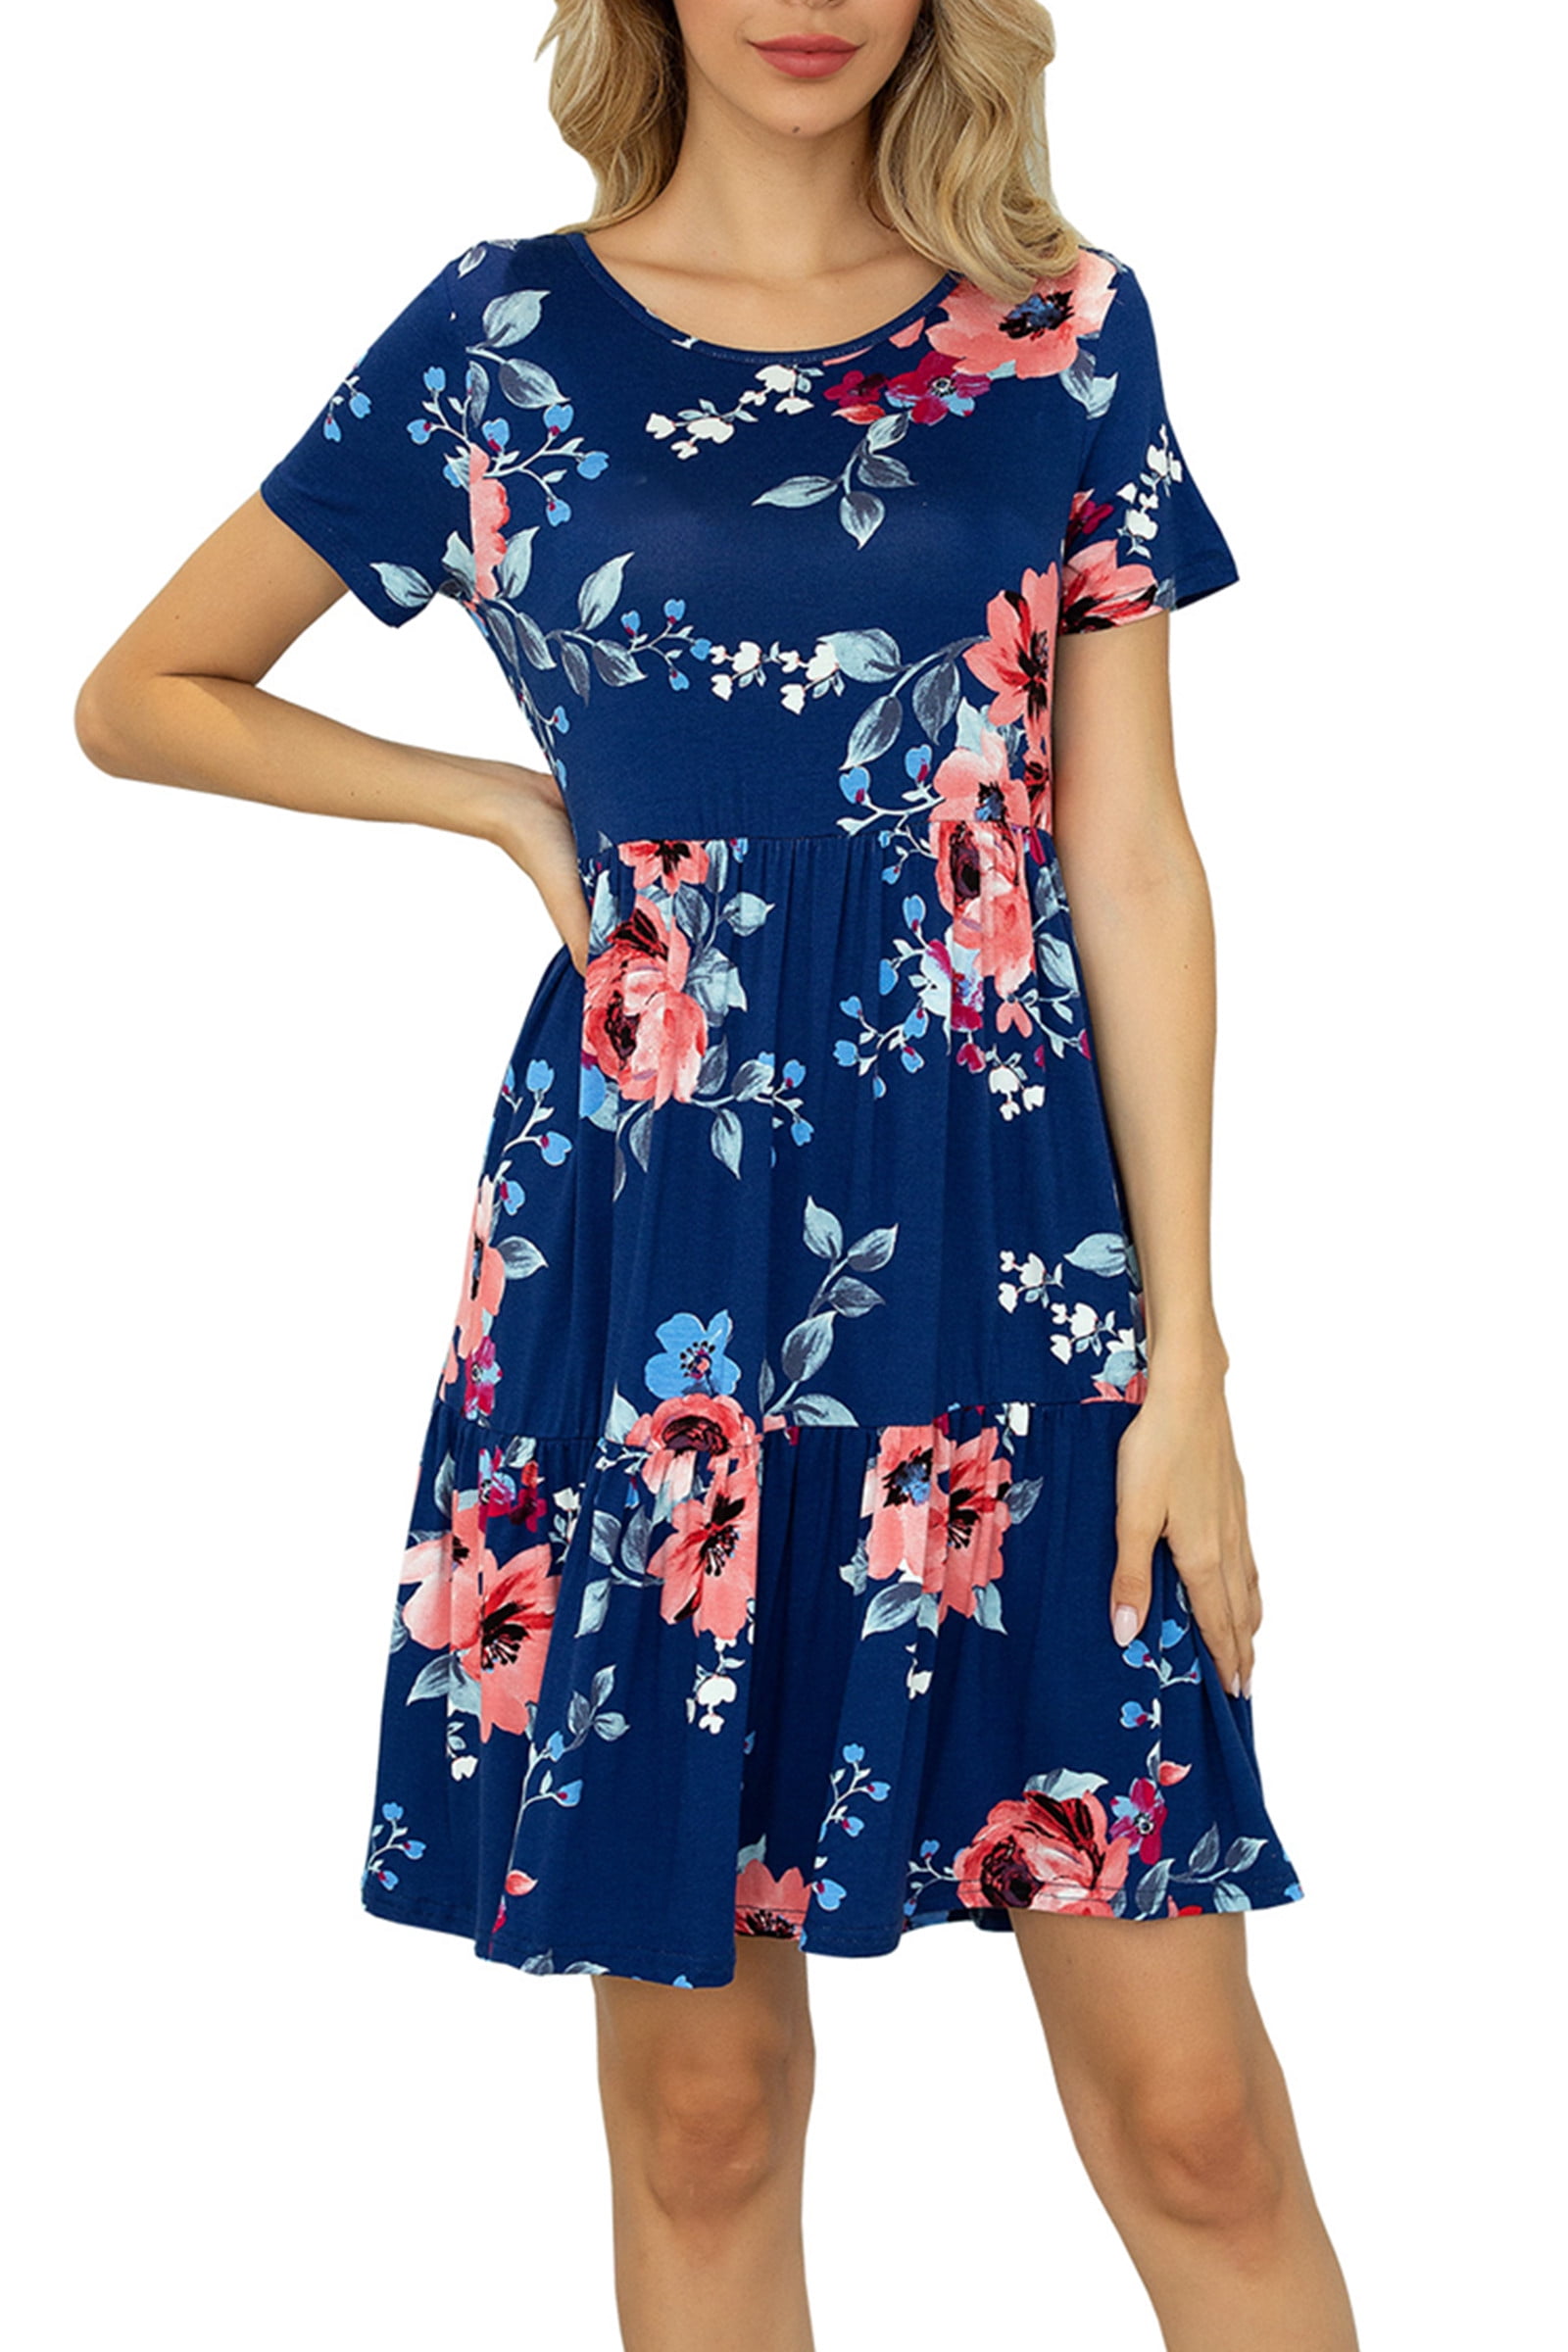 CALIPESSA Womens Summer Tiered Layer Navy Blue Floral Print Short Dress ...